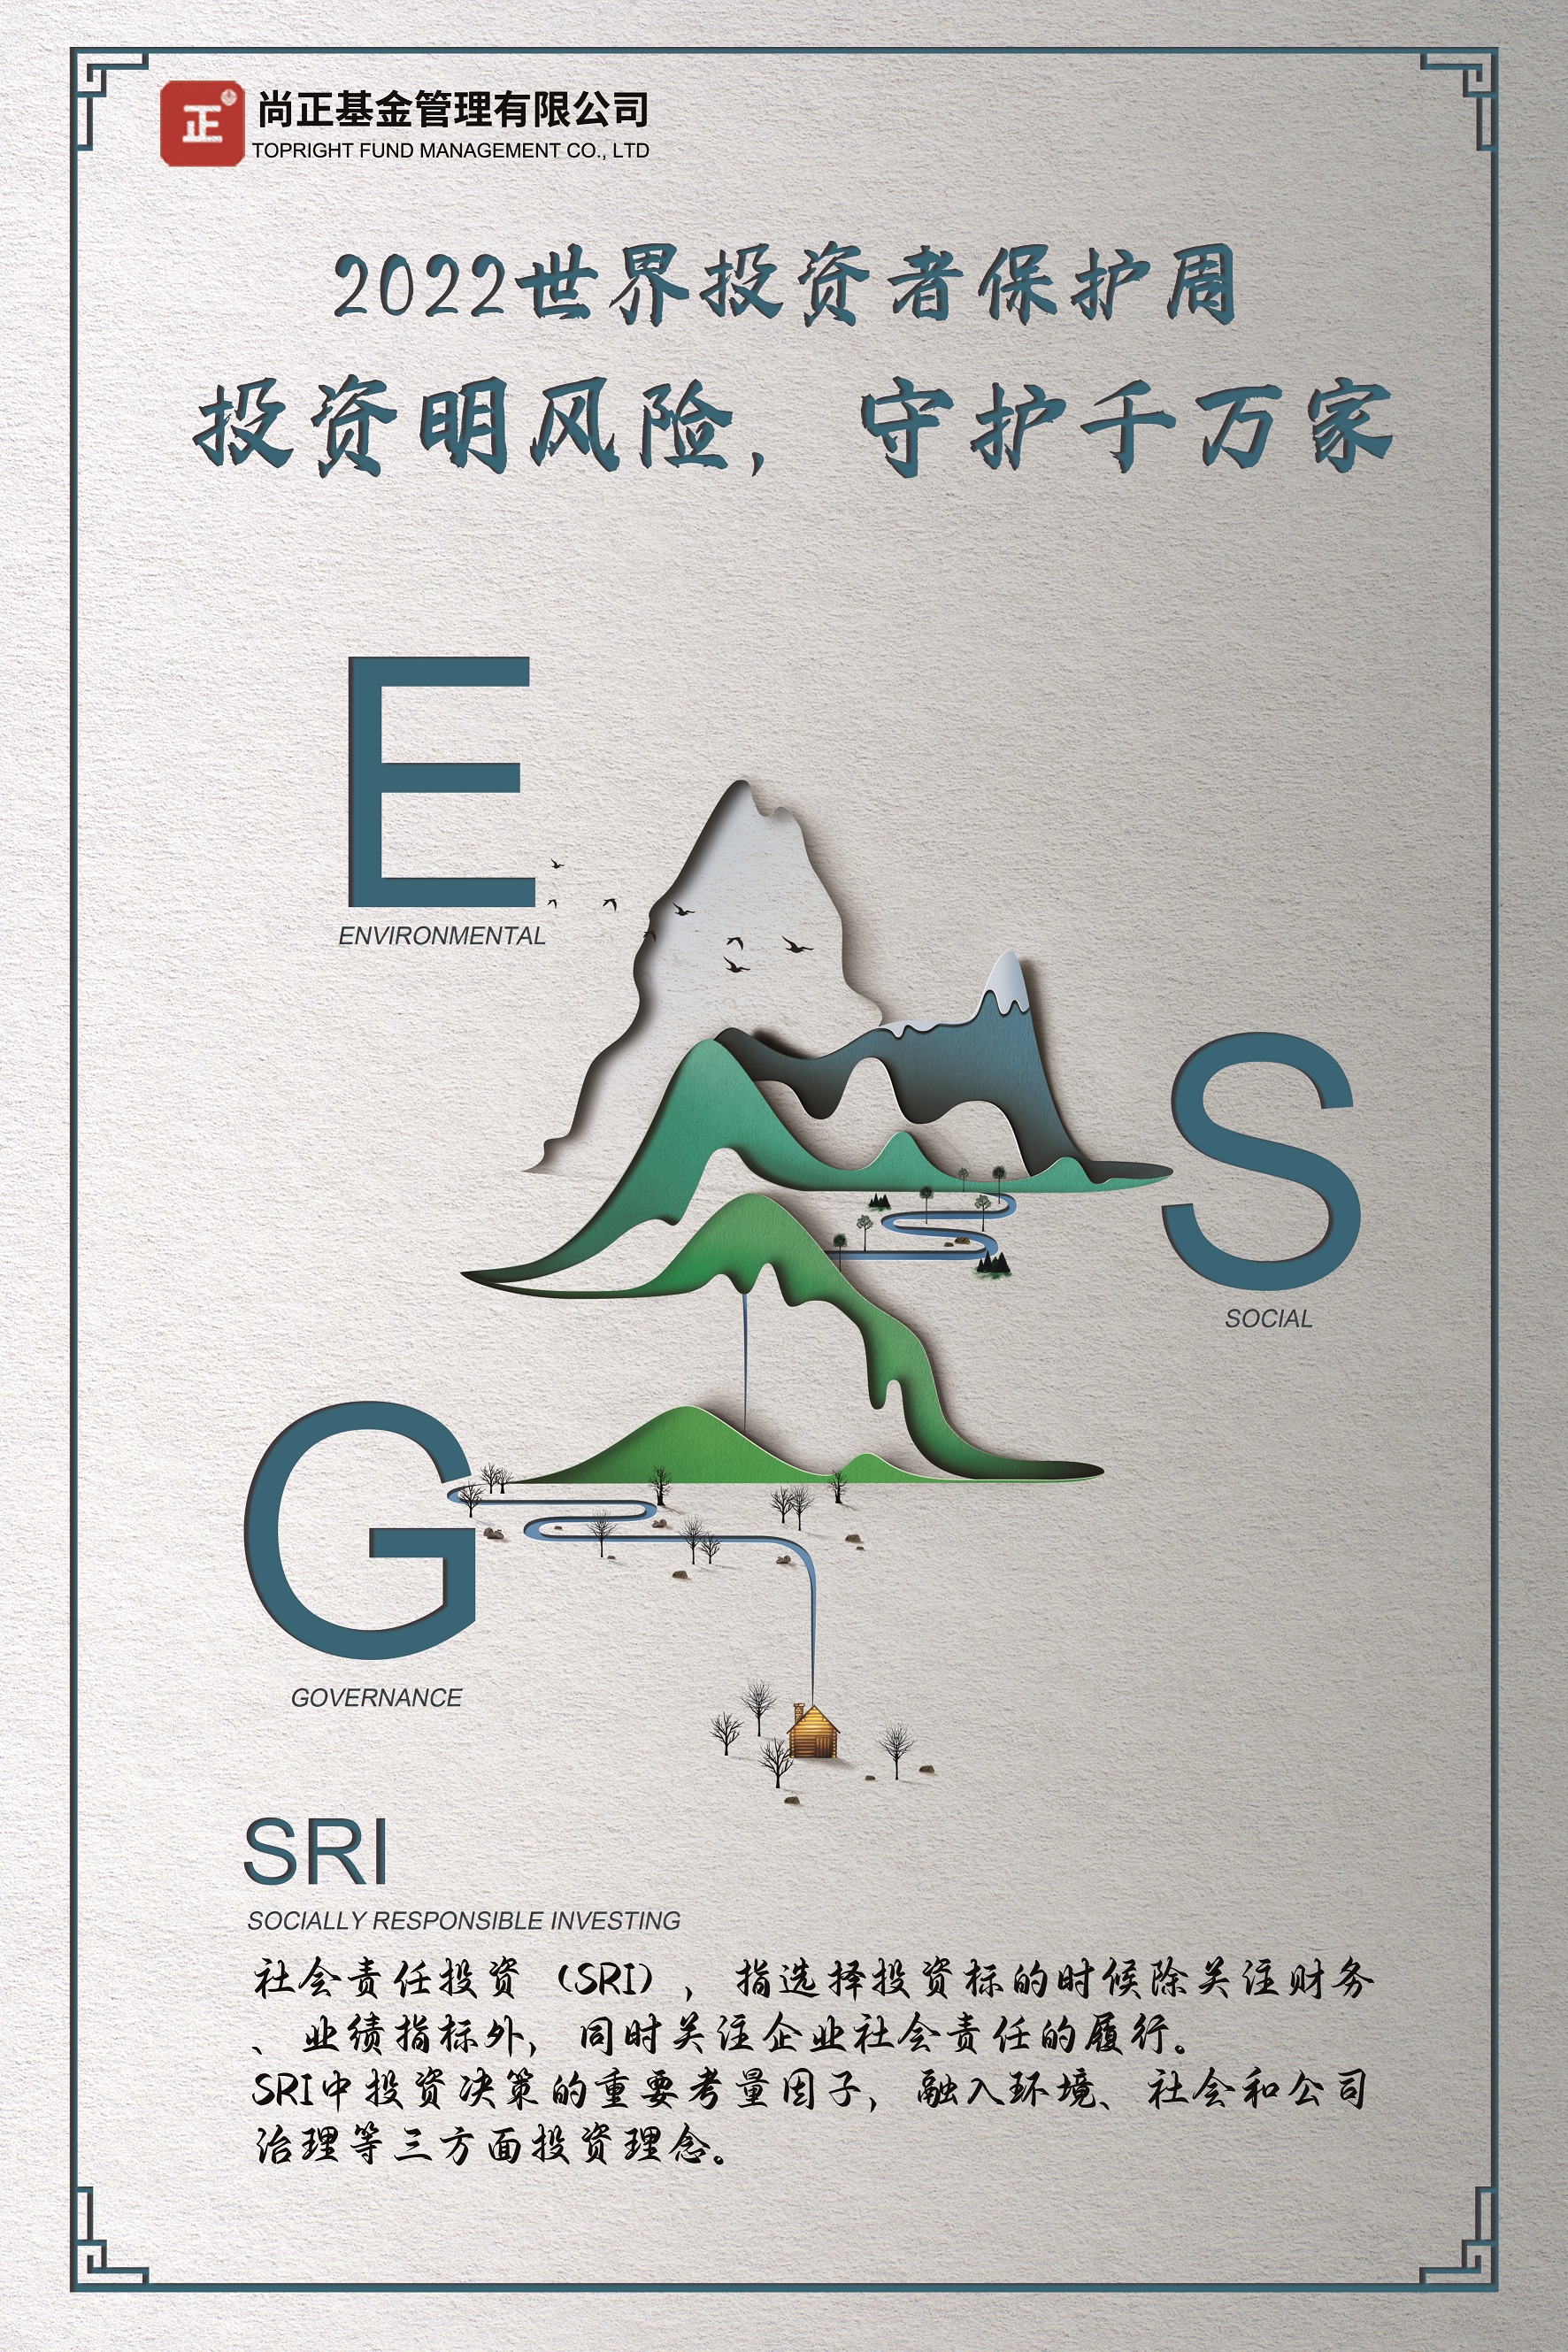 ESG宣传海报-尚正基金.jpg